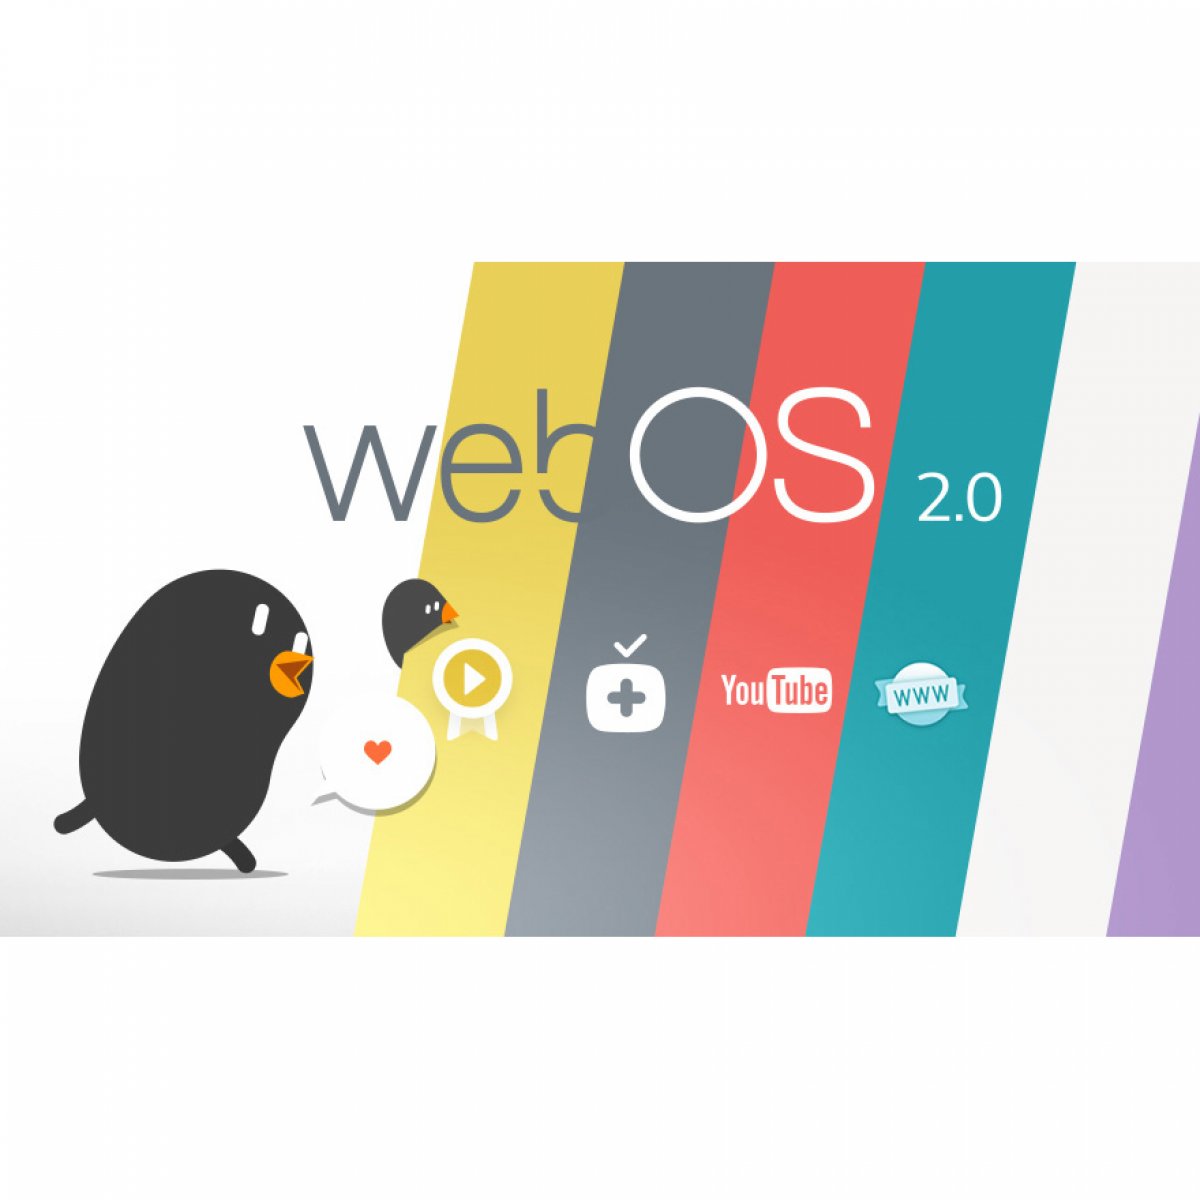 Bohatá nabídka funkcí platformy webOS 2.0